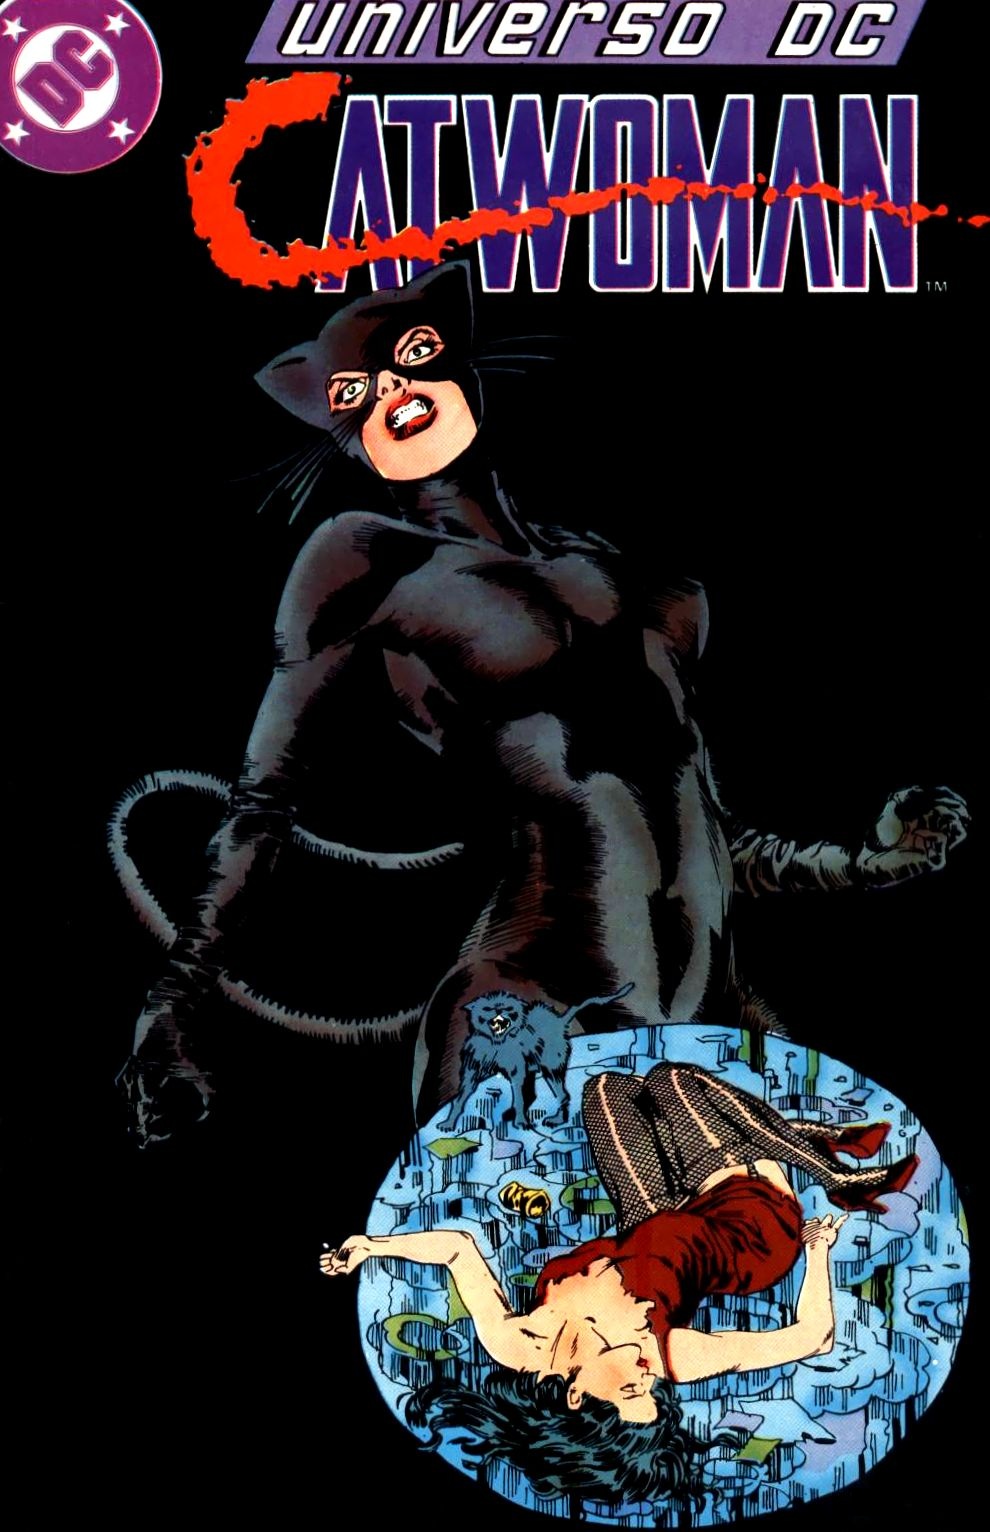 Leer Catwoman Volumen 1 Comic Online en Español